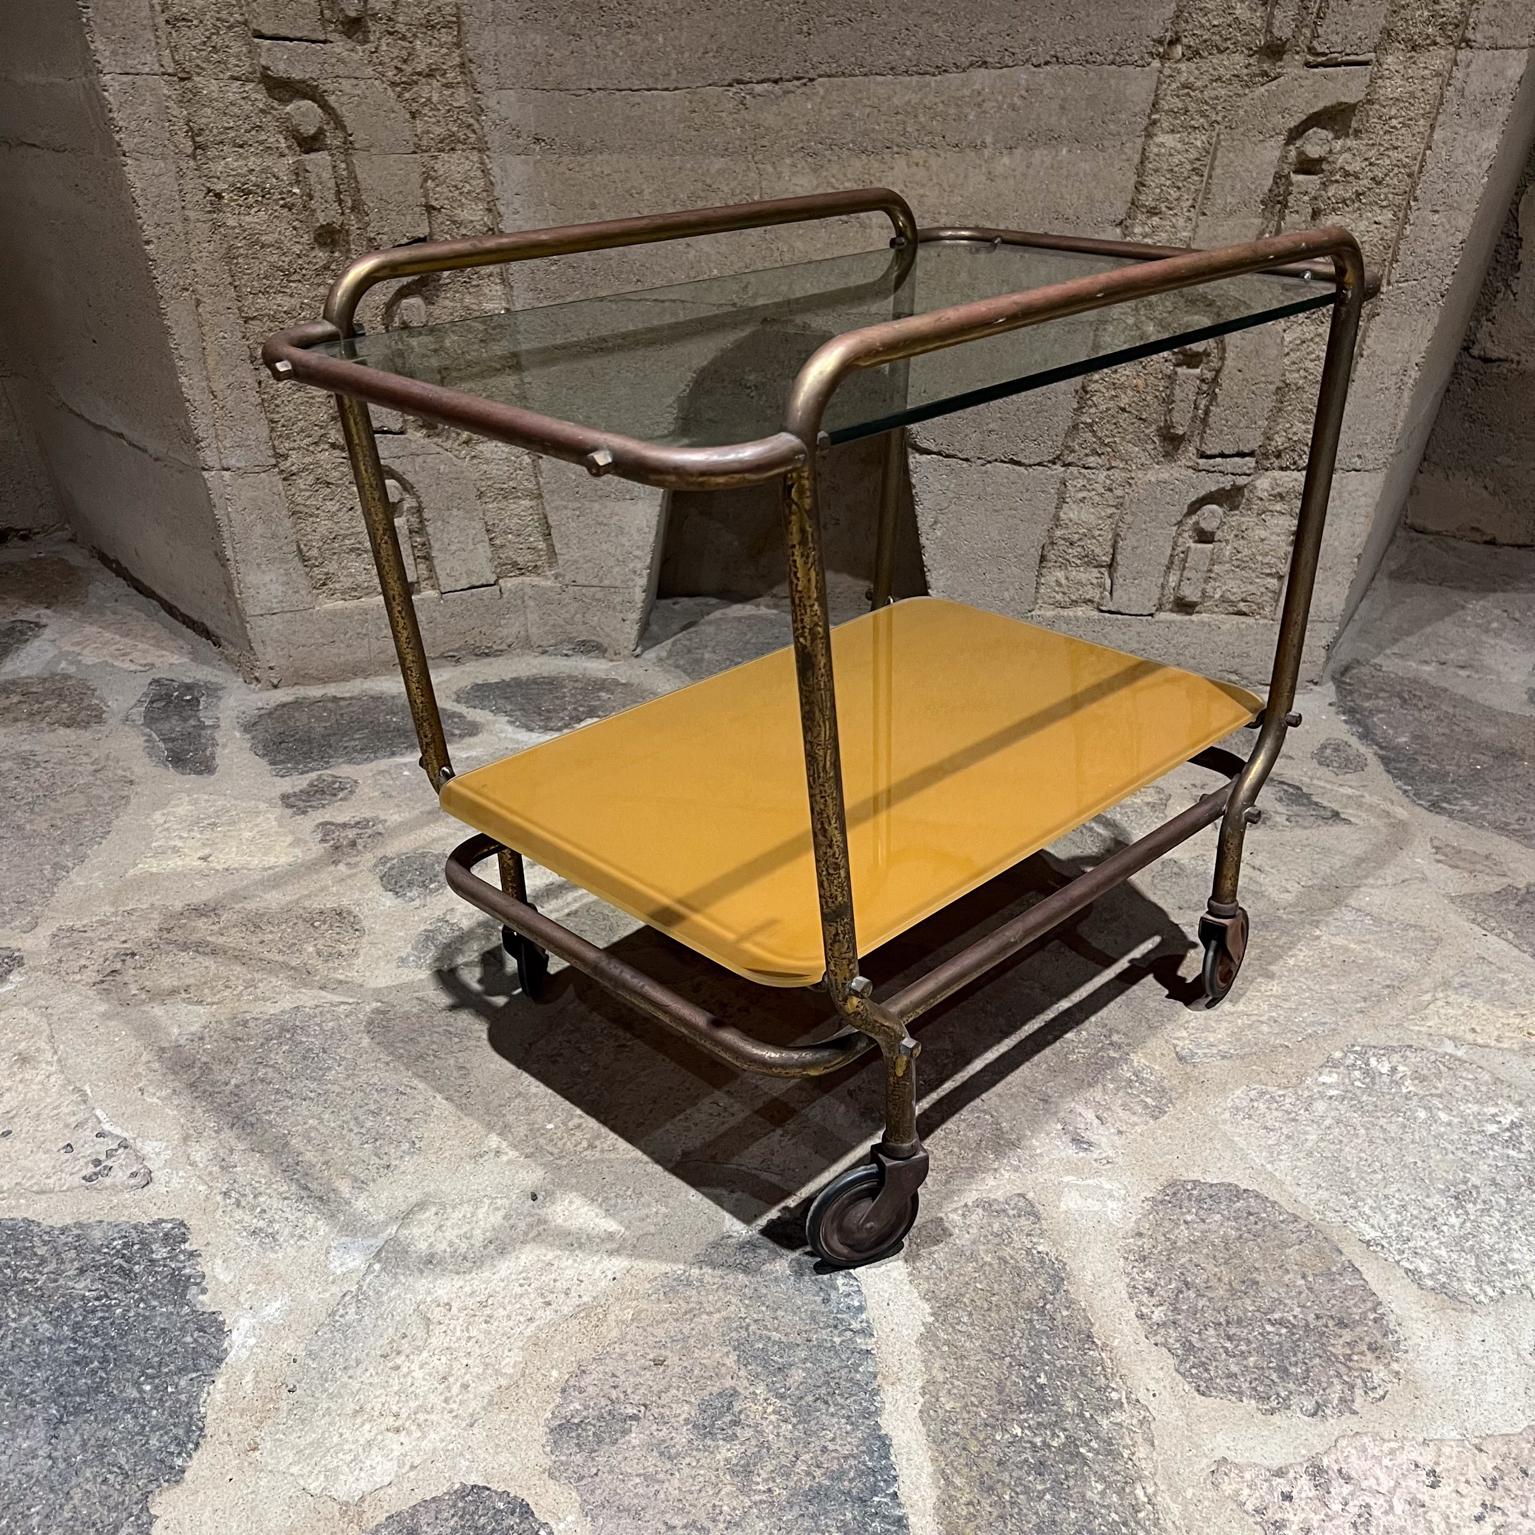 1950s Mexico lovely vintage Modern Brass Service Cart by Arturo Pani.
Construction du corps en laiton tubulaire. Roues d'origine.
Le chariot est livré avec un nouveau plateau en verre.
Vintage d'occasion, le laiton n'a pas été restauré et présente